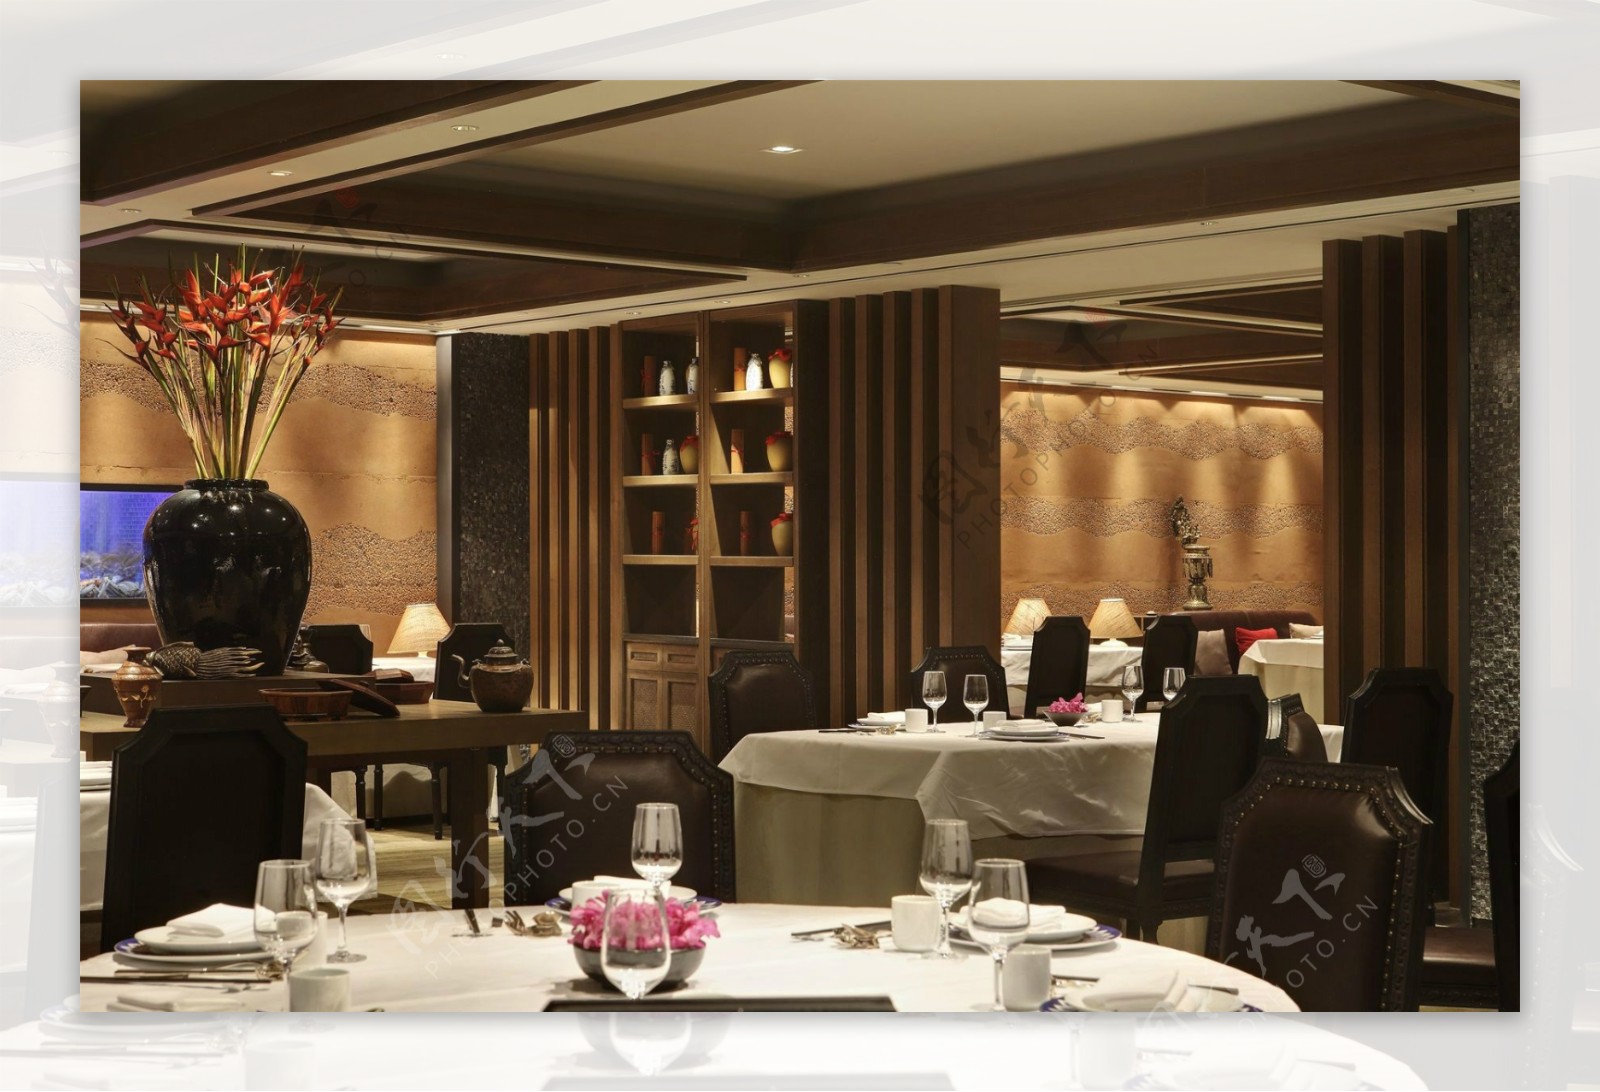 现代高级酒店餐厅白色餐桌工装装修效果图